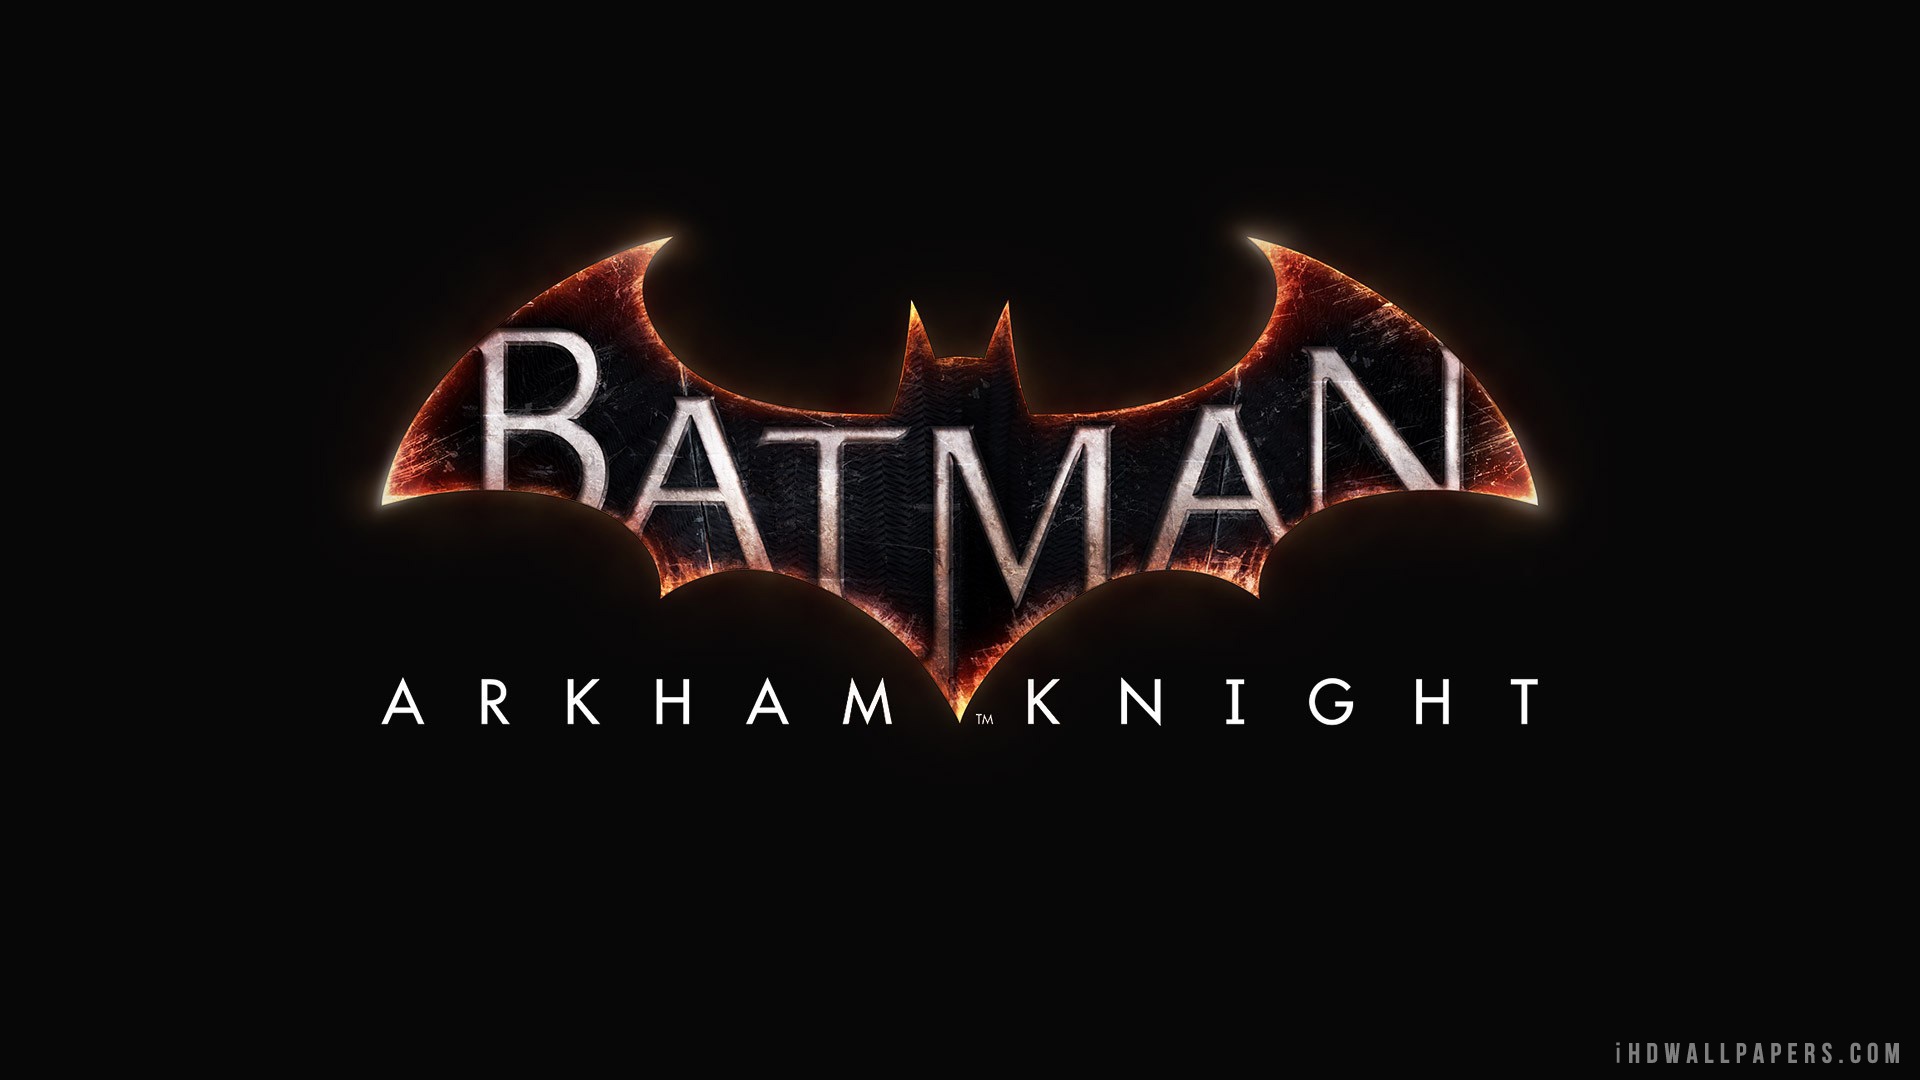 Batman Arkham Knight Logo HD Wallpaper   iHD Wallpapers 1920x1080